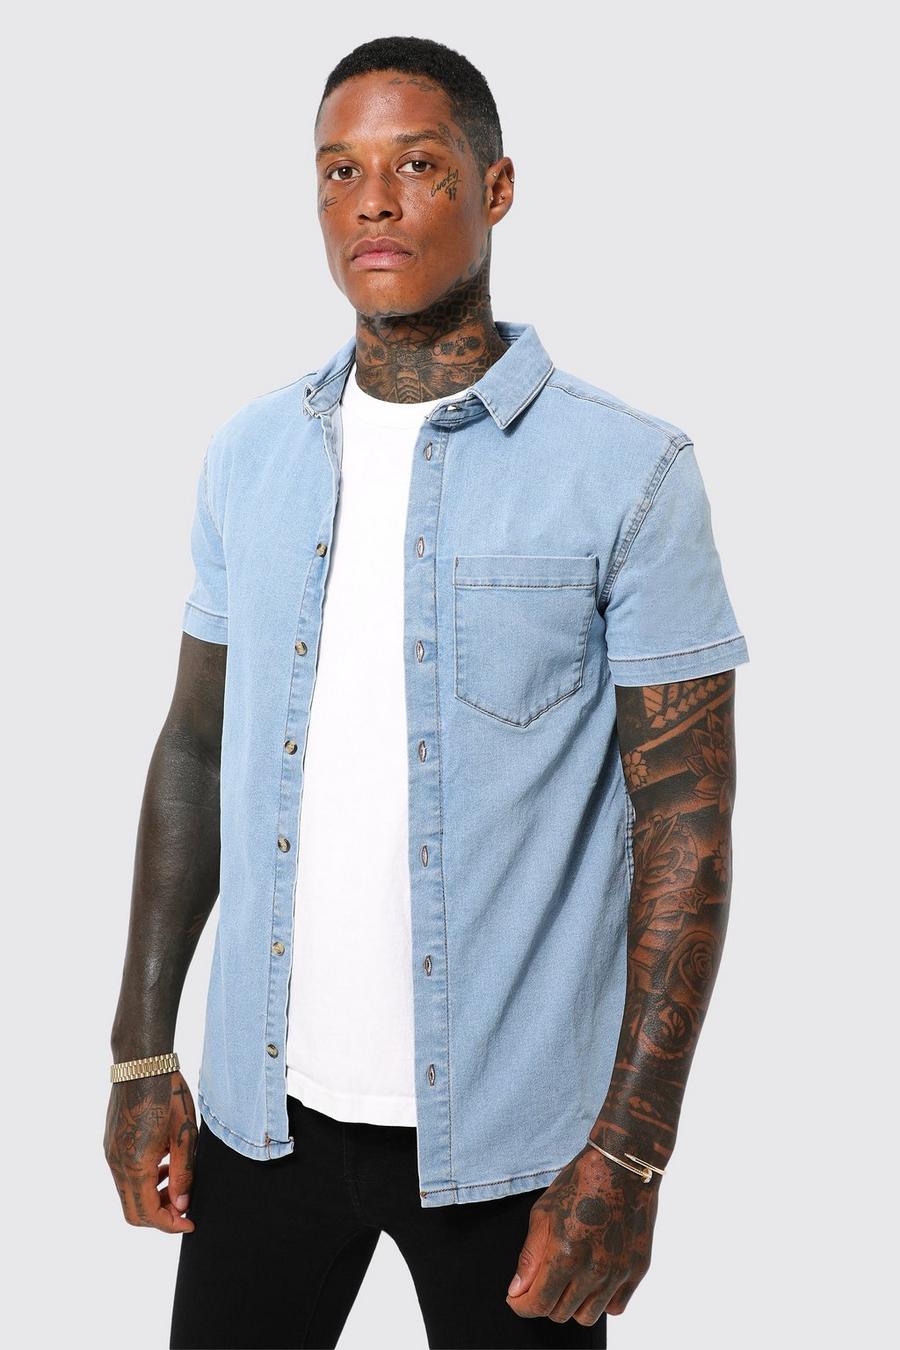 Light blue Short Sleeve Muscle Fit Denim Shirt image number 1